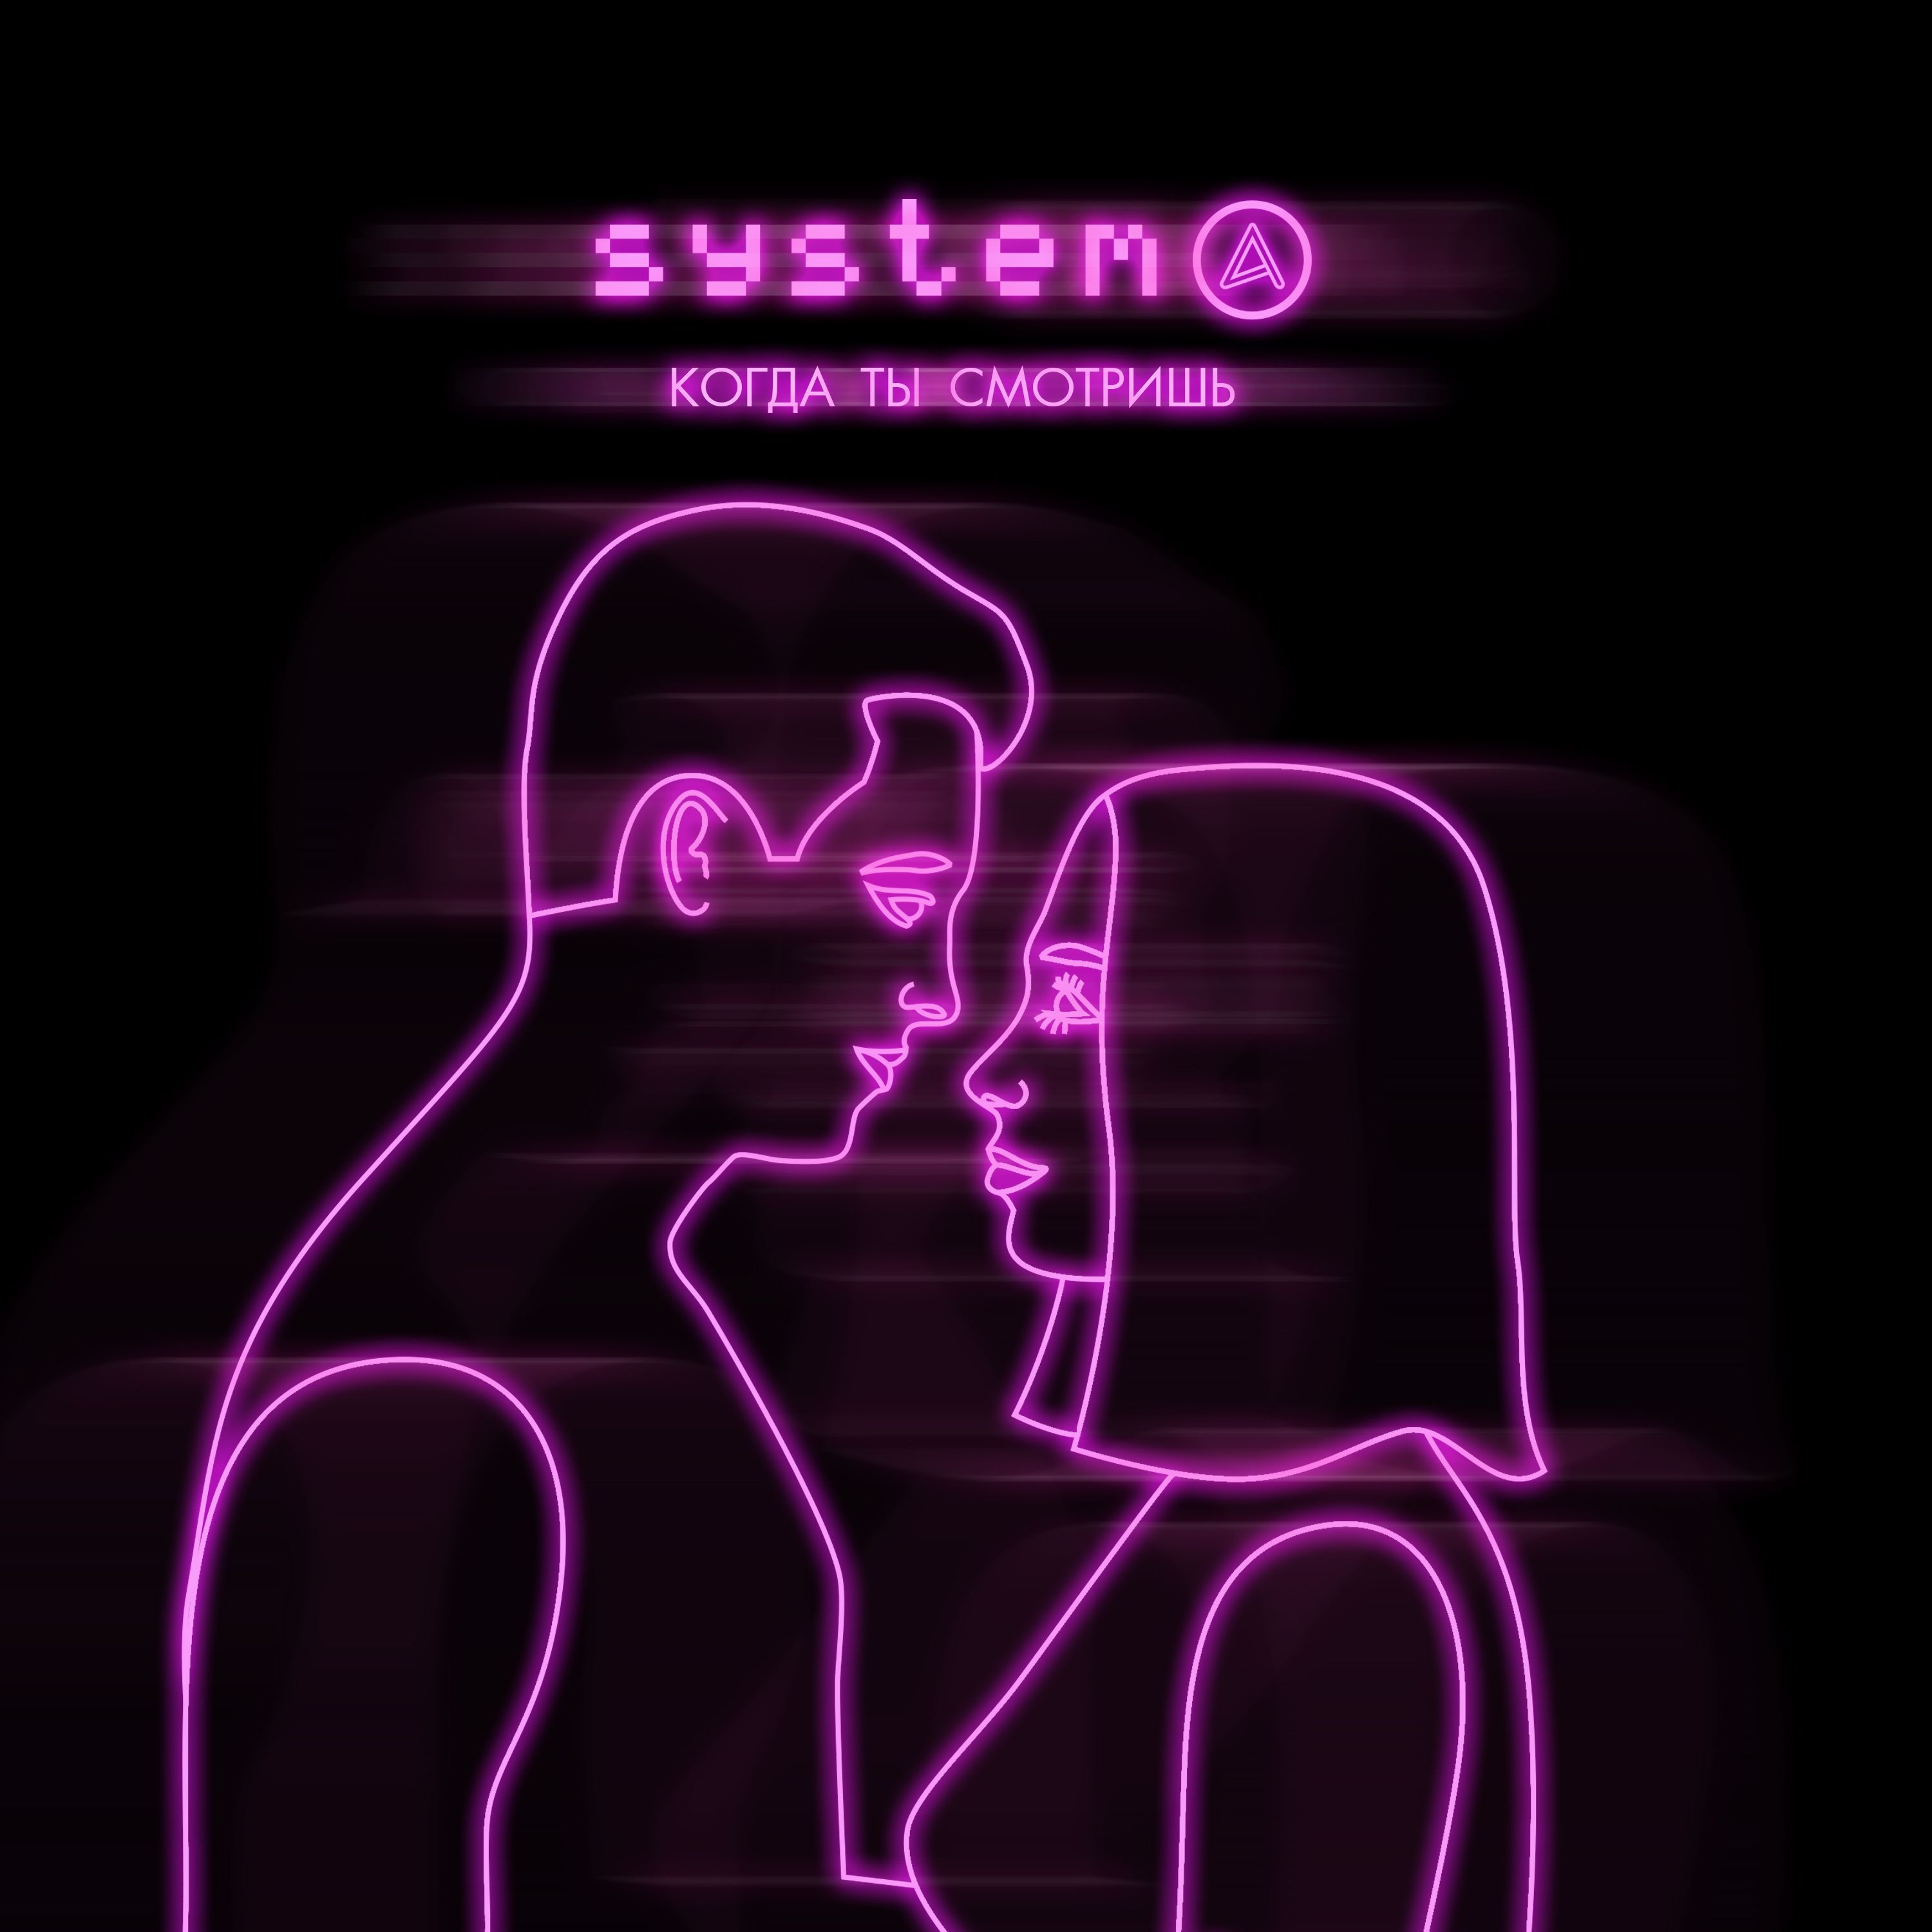 Преузимање Systema - Когда ты смотришь